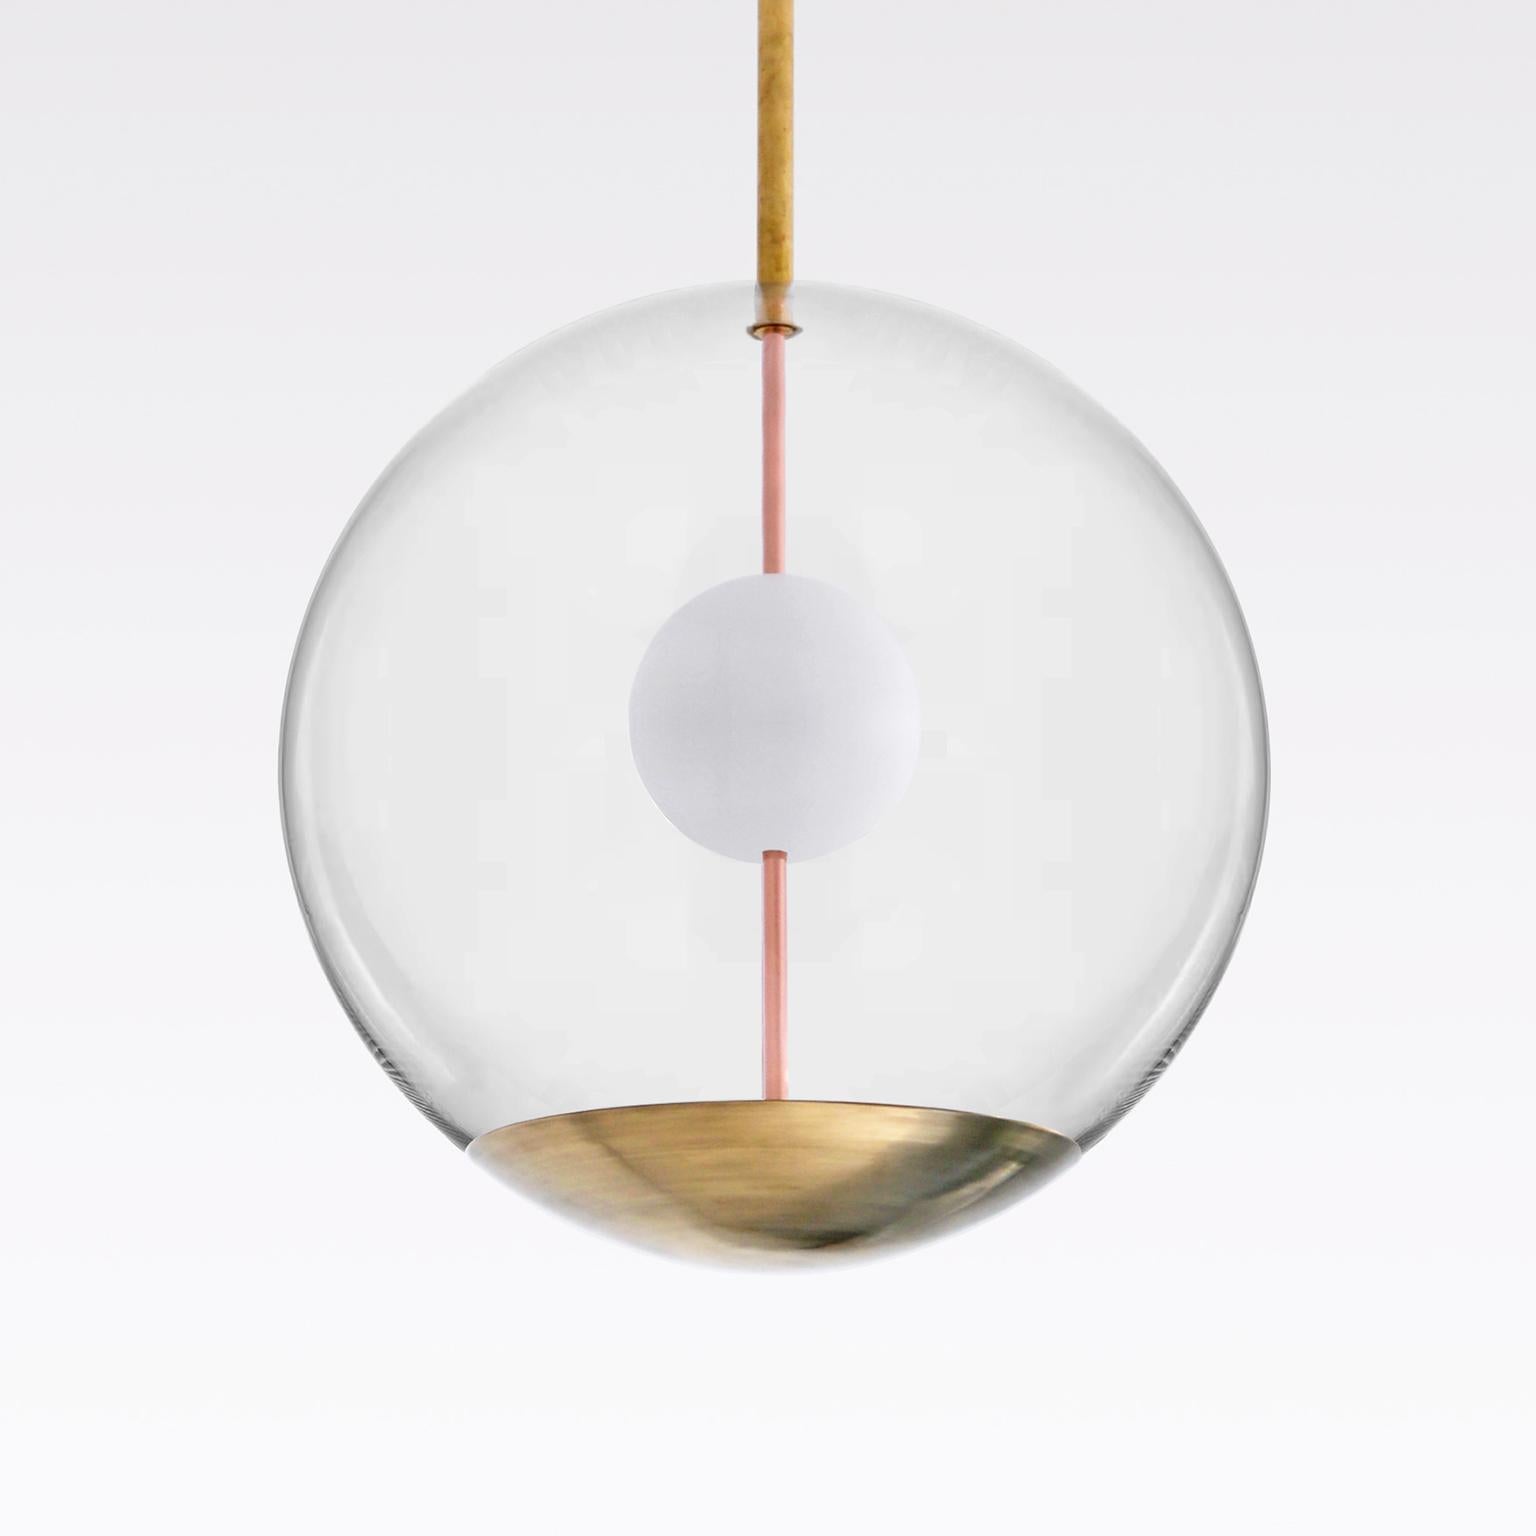 Plafonnier boule sur mesure en verre transparent, laiton et verre opale.
Pour la lumière réfléchie. Le délai de production est de 8 à 10 semaines.